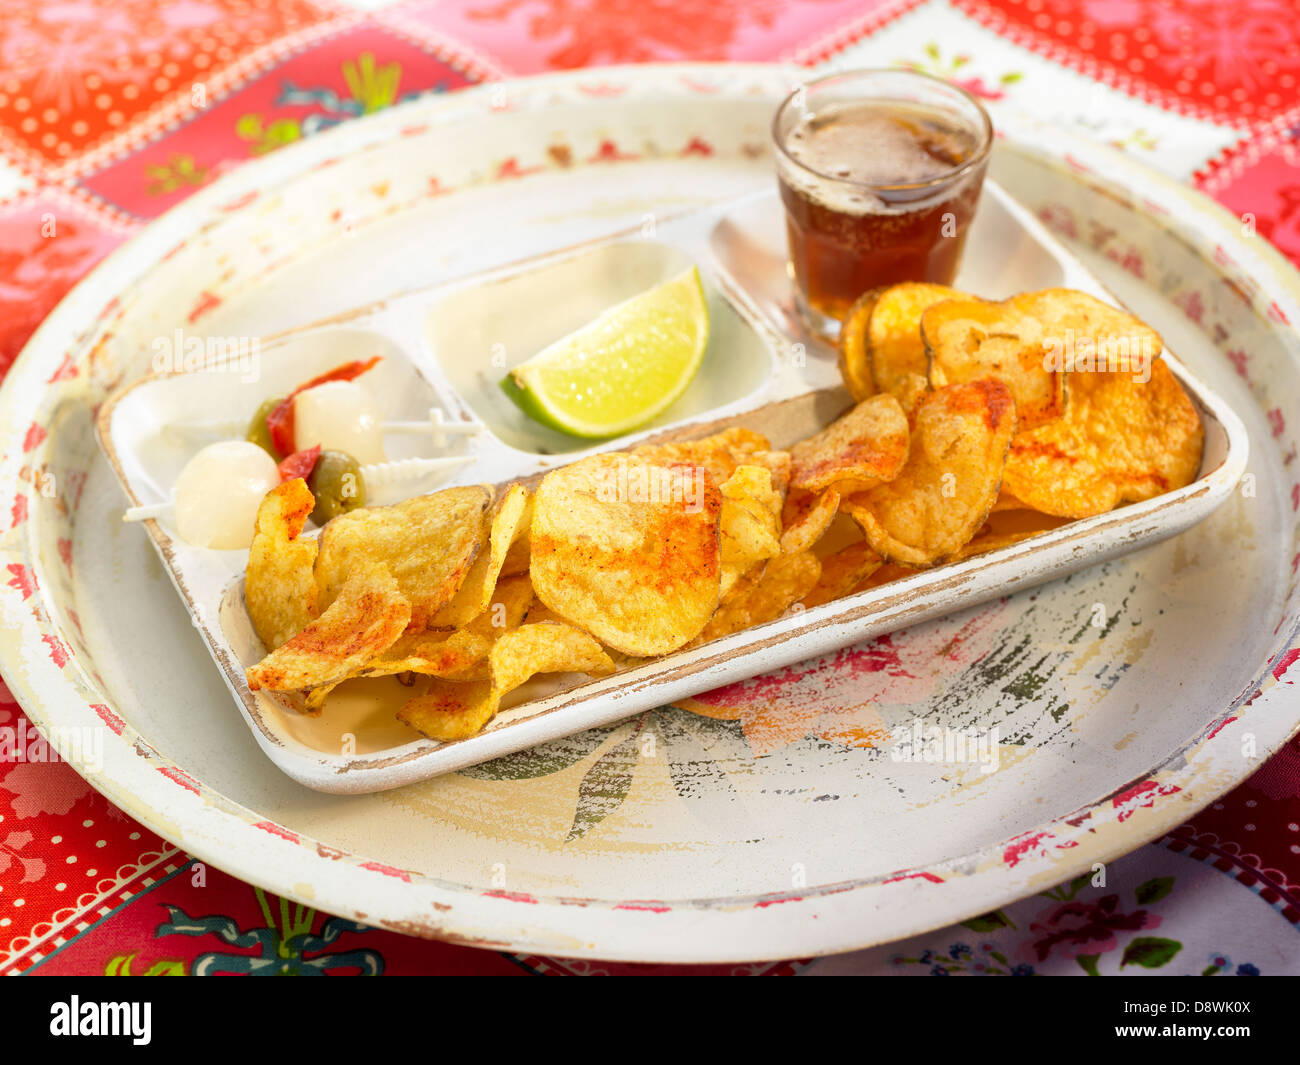 Aperitif tray with saffron-flavored crisps Stock Photo